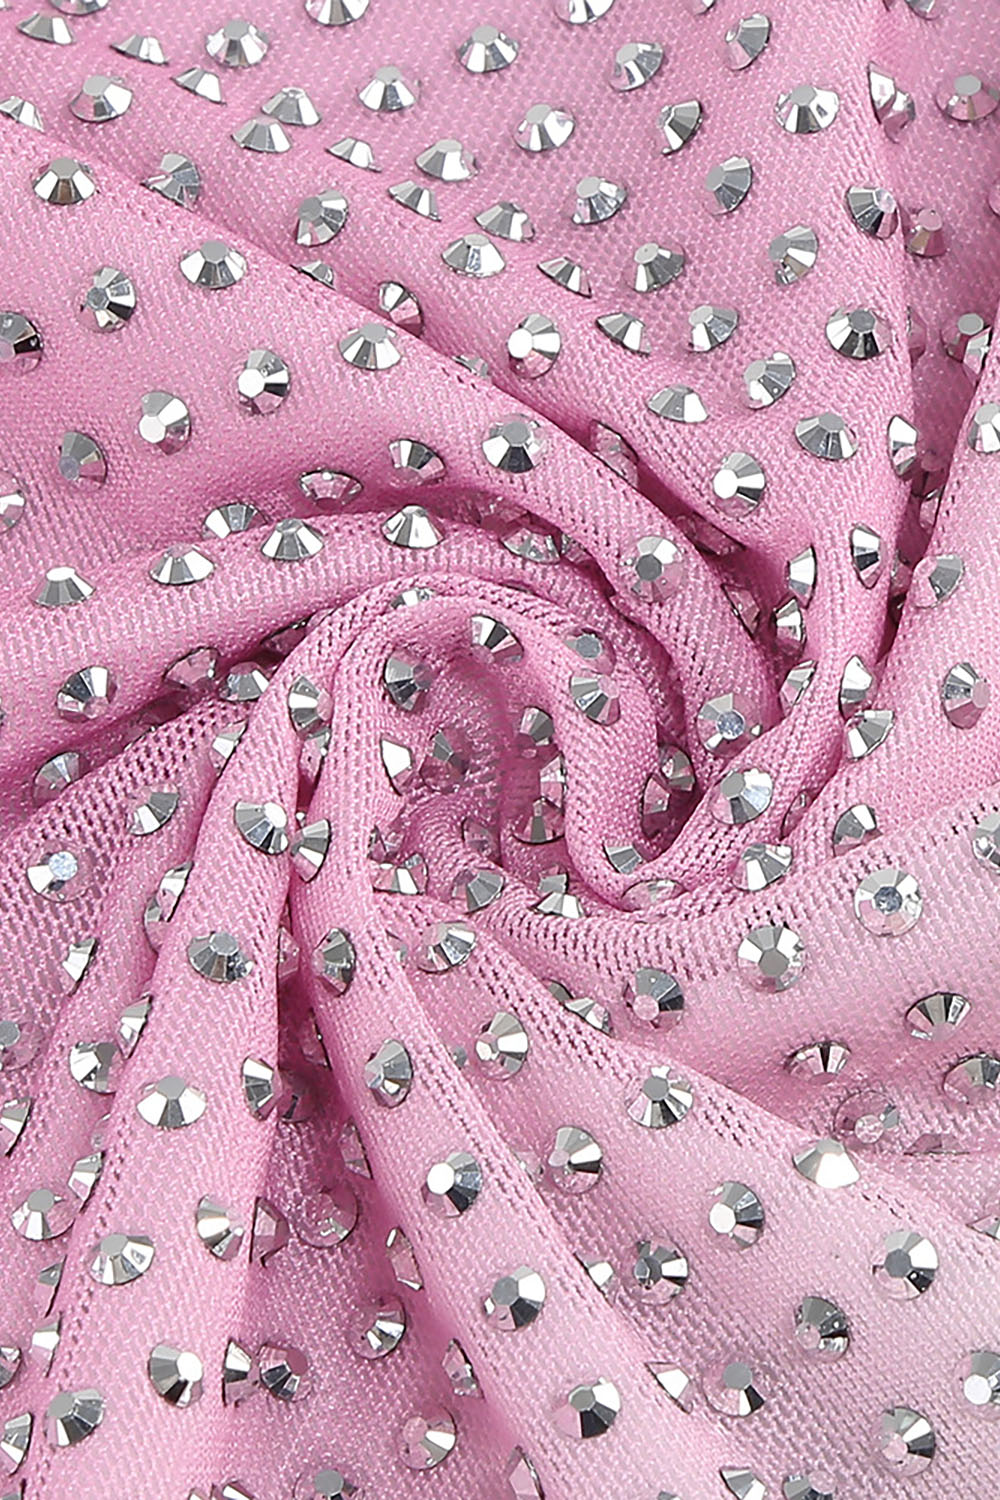 Mini-robe à cristaux pour femmes en rose